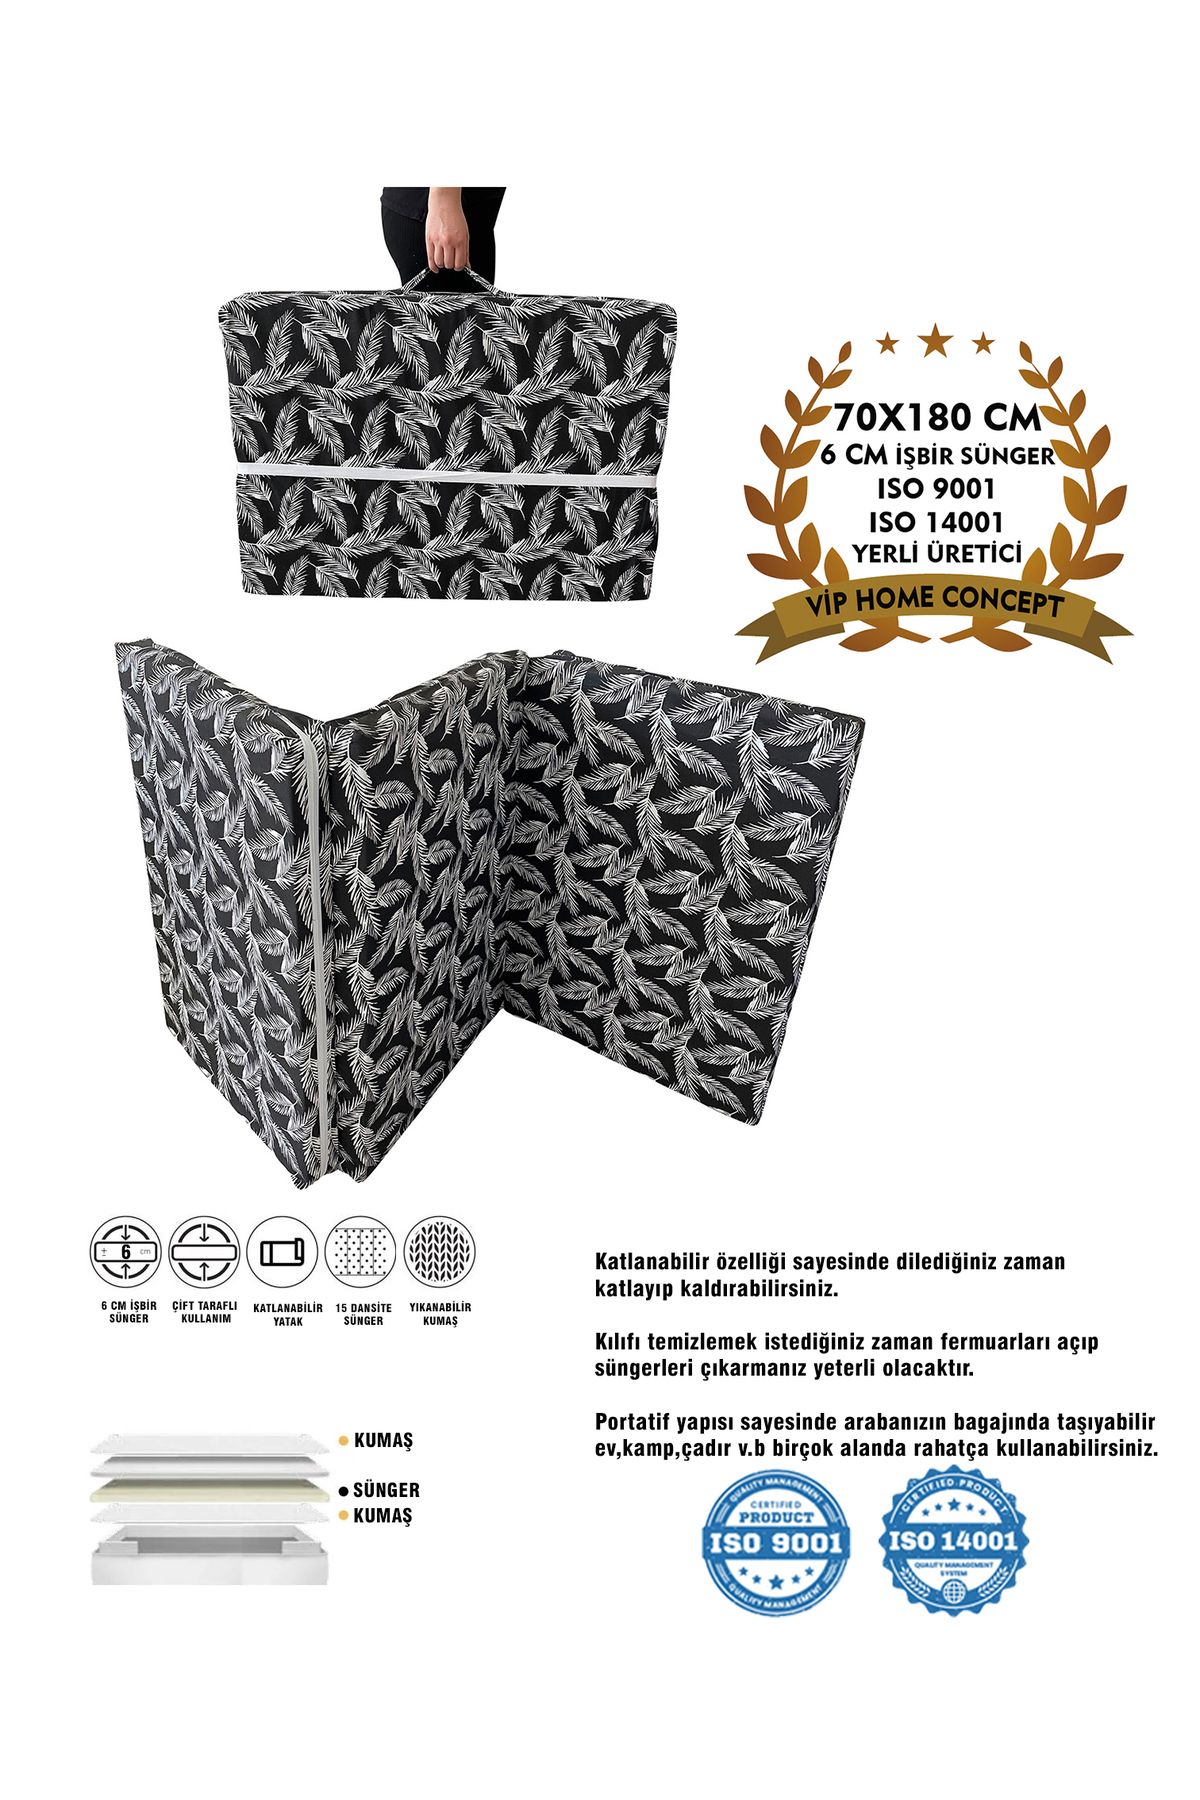 Vip Home Concept Market Ürünleri Katlanır Yer Yatağı Sünger Yatak Siyah Tüylü 70x180 Cm-6 Cm Tek Kişilik